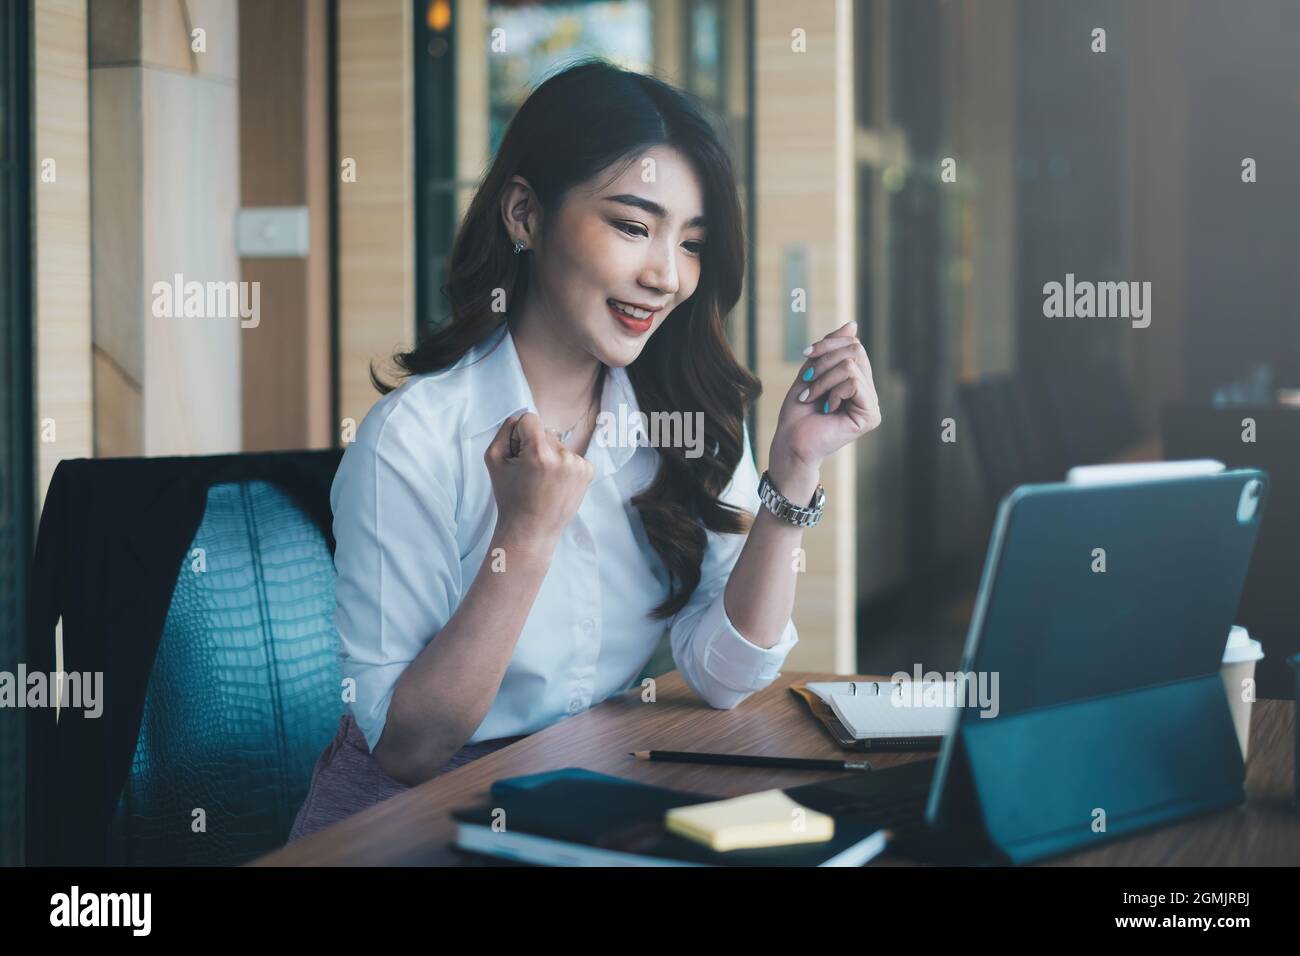 Une femme asiatique excitée s'assoit à son poste de travail, extatique d'avoir reçu une offre d'emploi à la suite d'un entretien par e-mail sur son ordinateur portable Banque D'Images